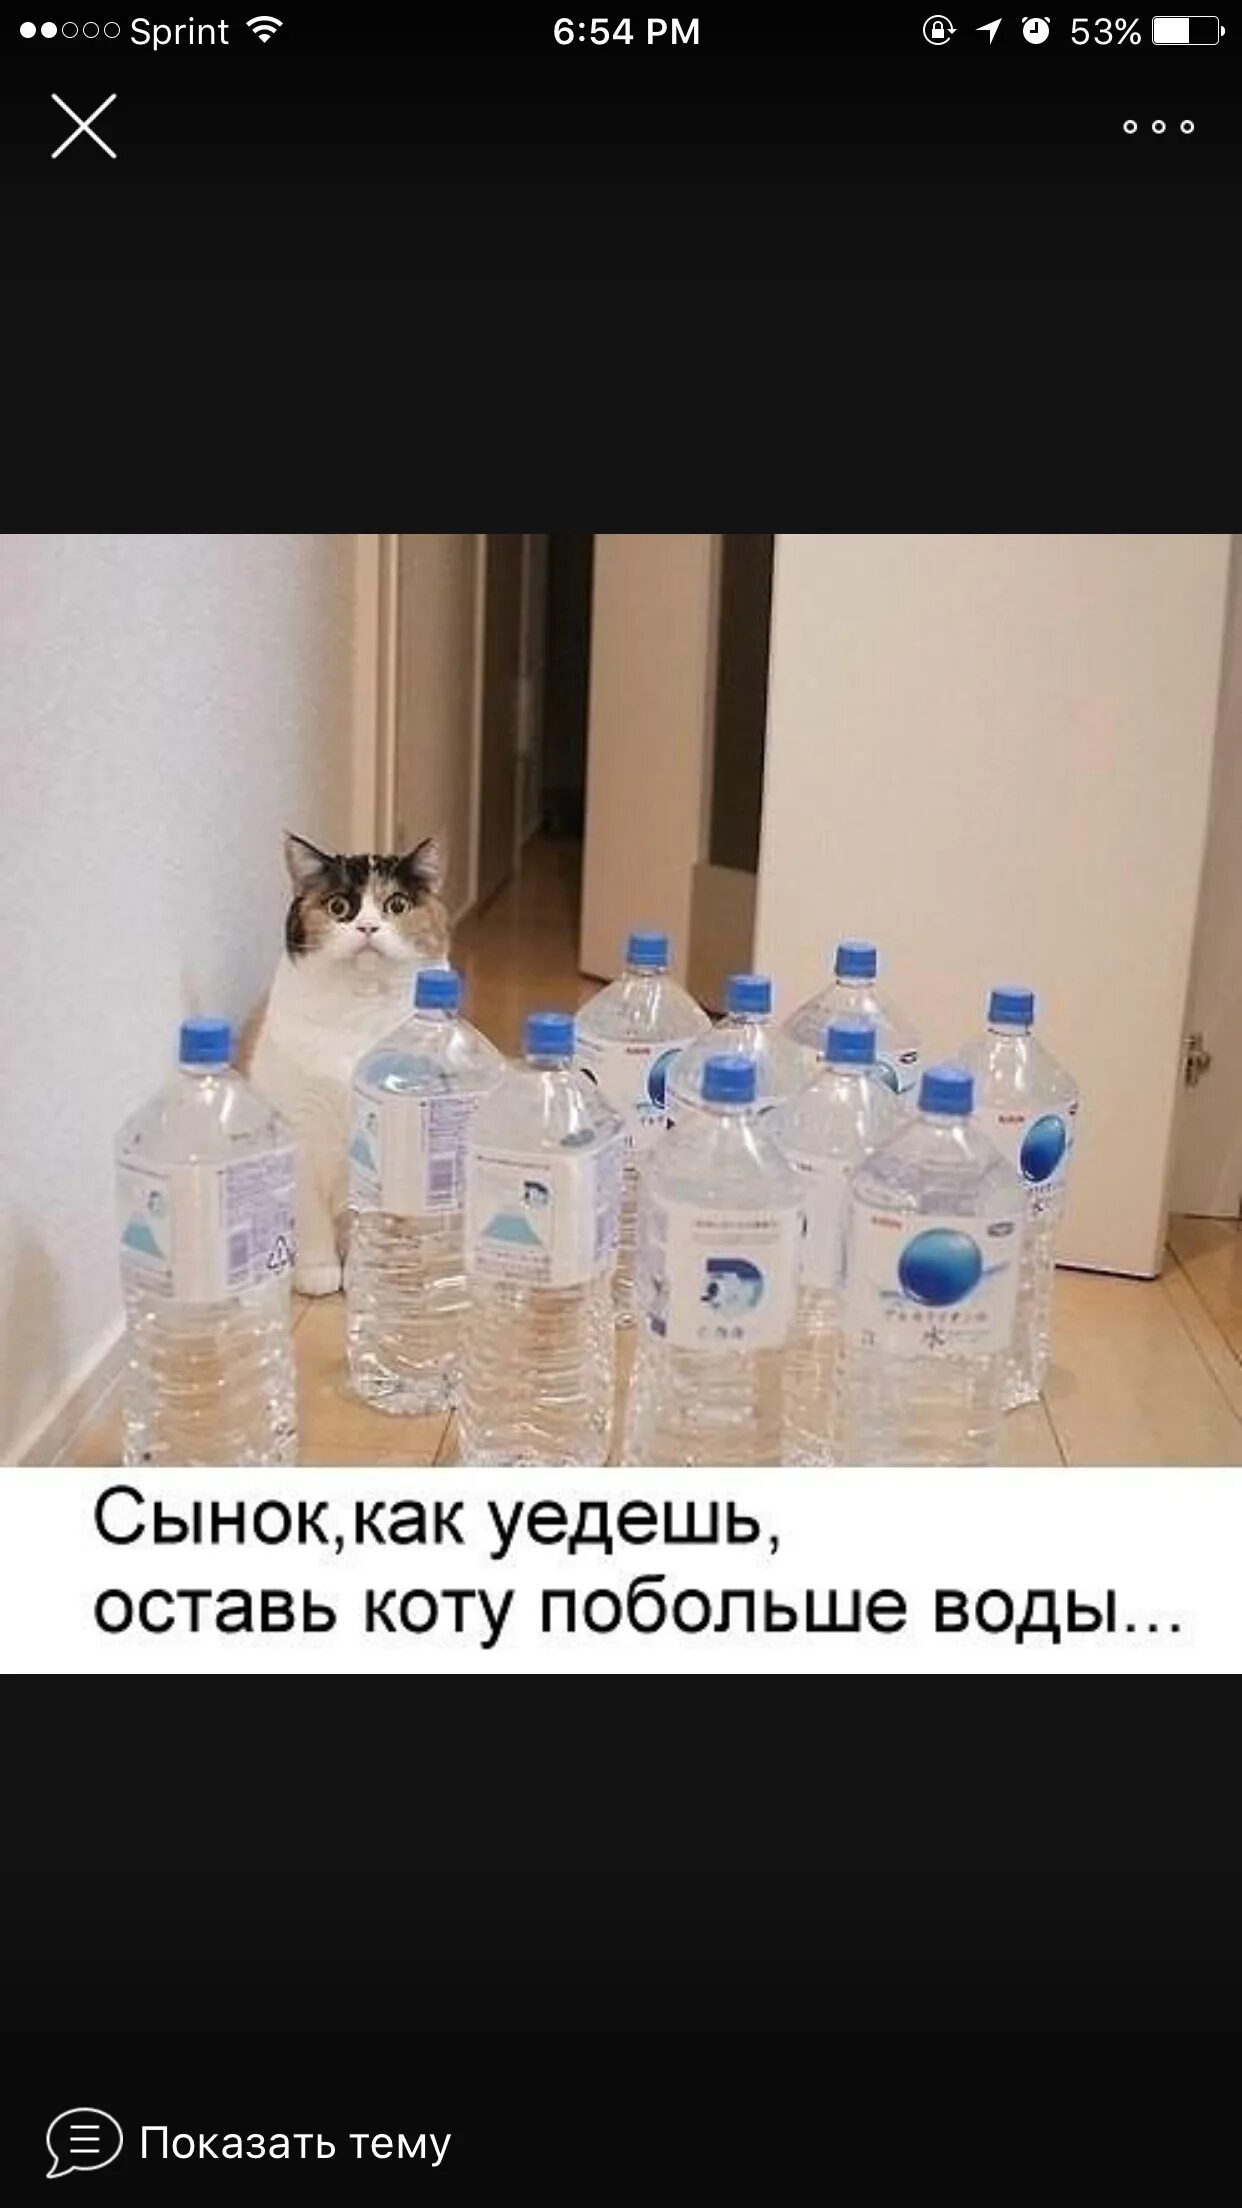 Уехал оставил сына. Оставил коту воды. Оставь коту побольше воды. Уедешь оставь коту побольше воды. Налей коту побольше воды.